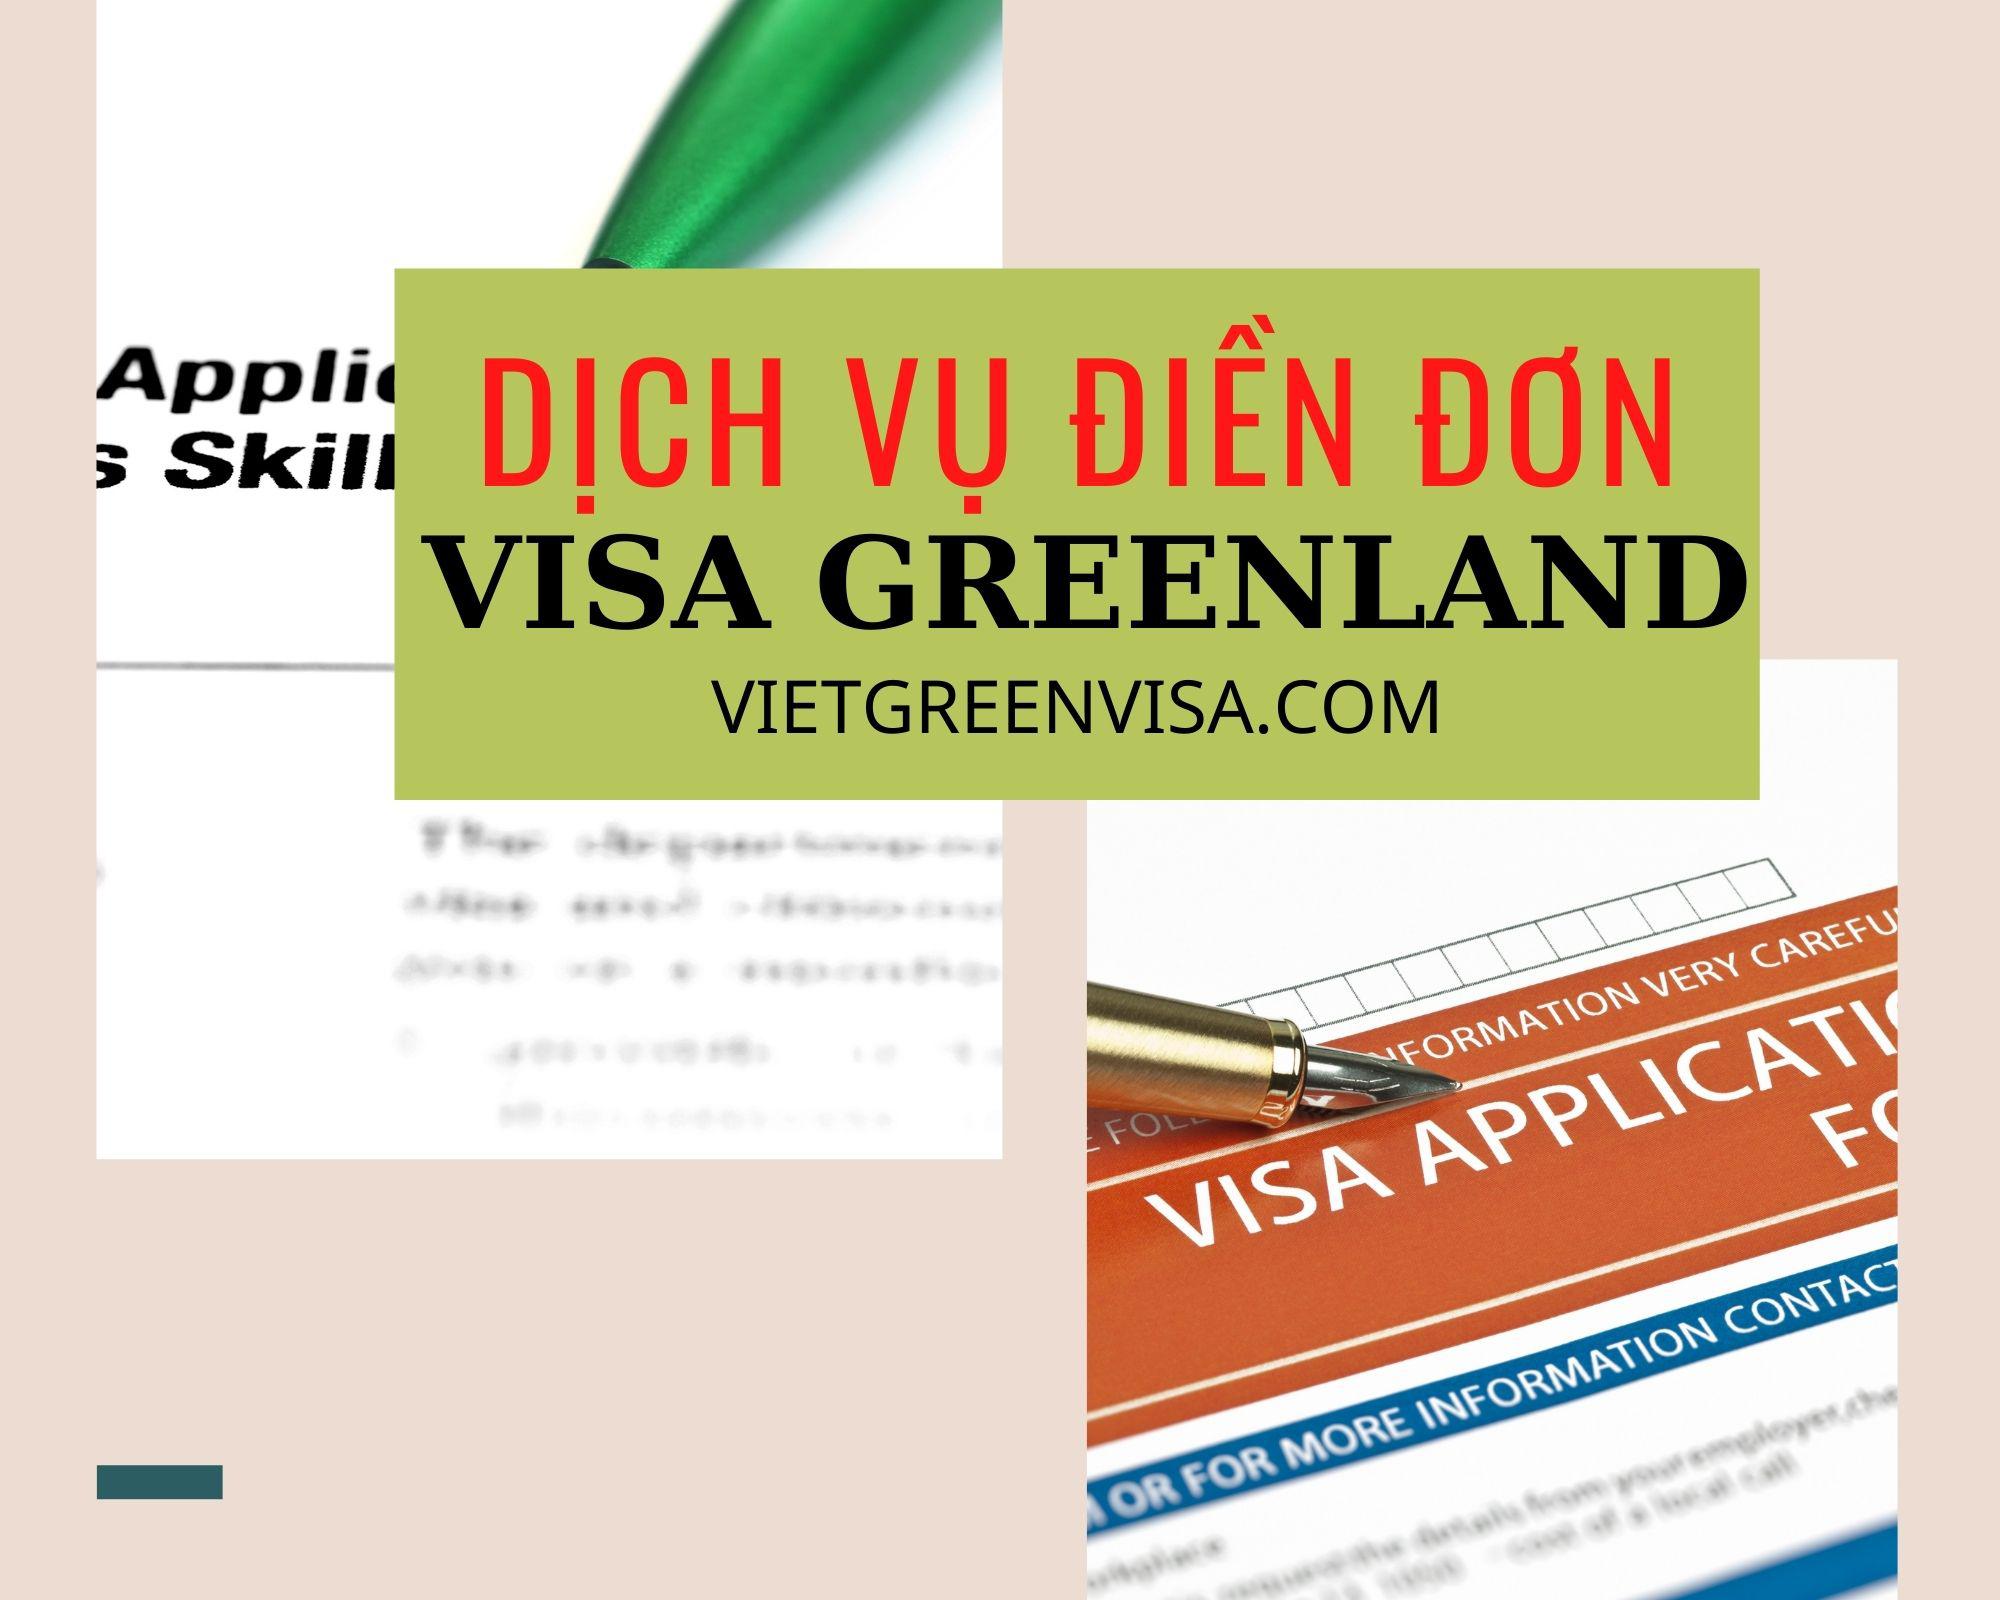 Dịch vụ điền đơn visa Greenland online nhanh gọn